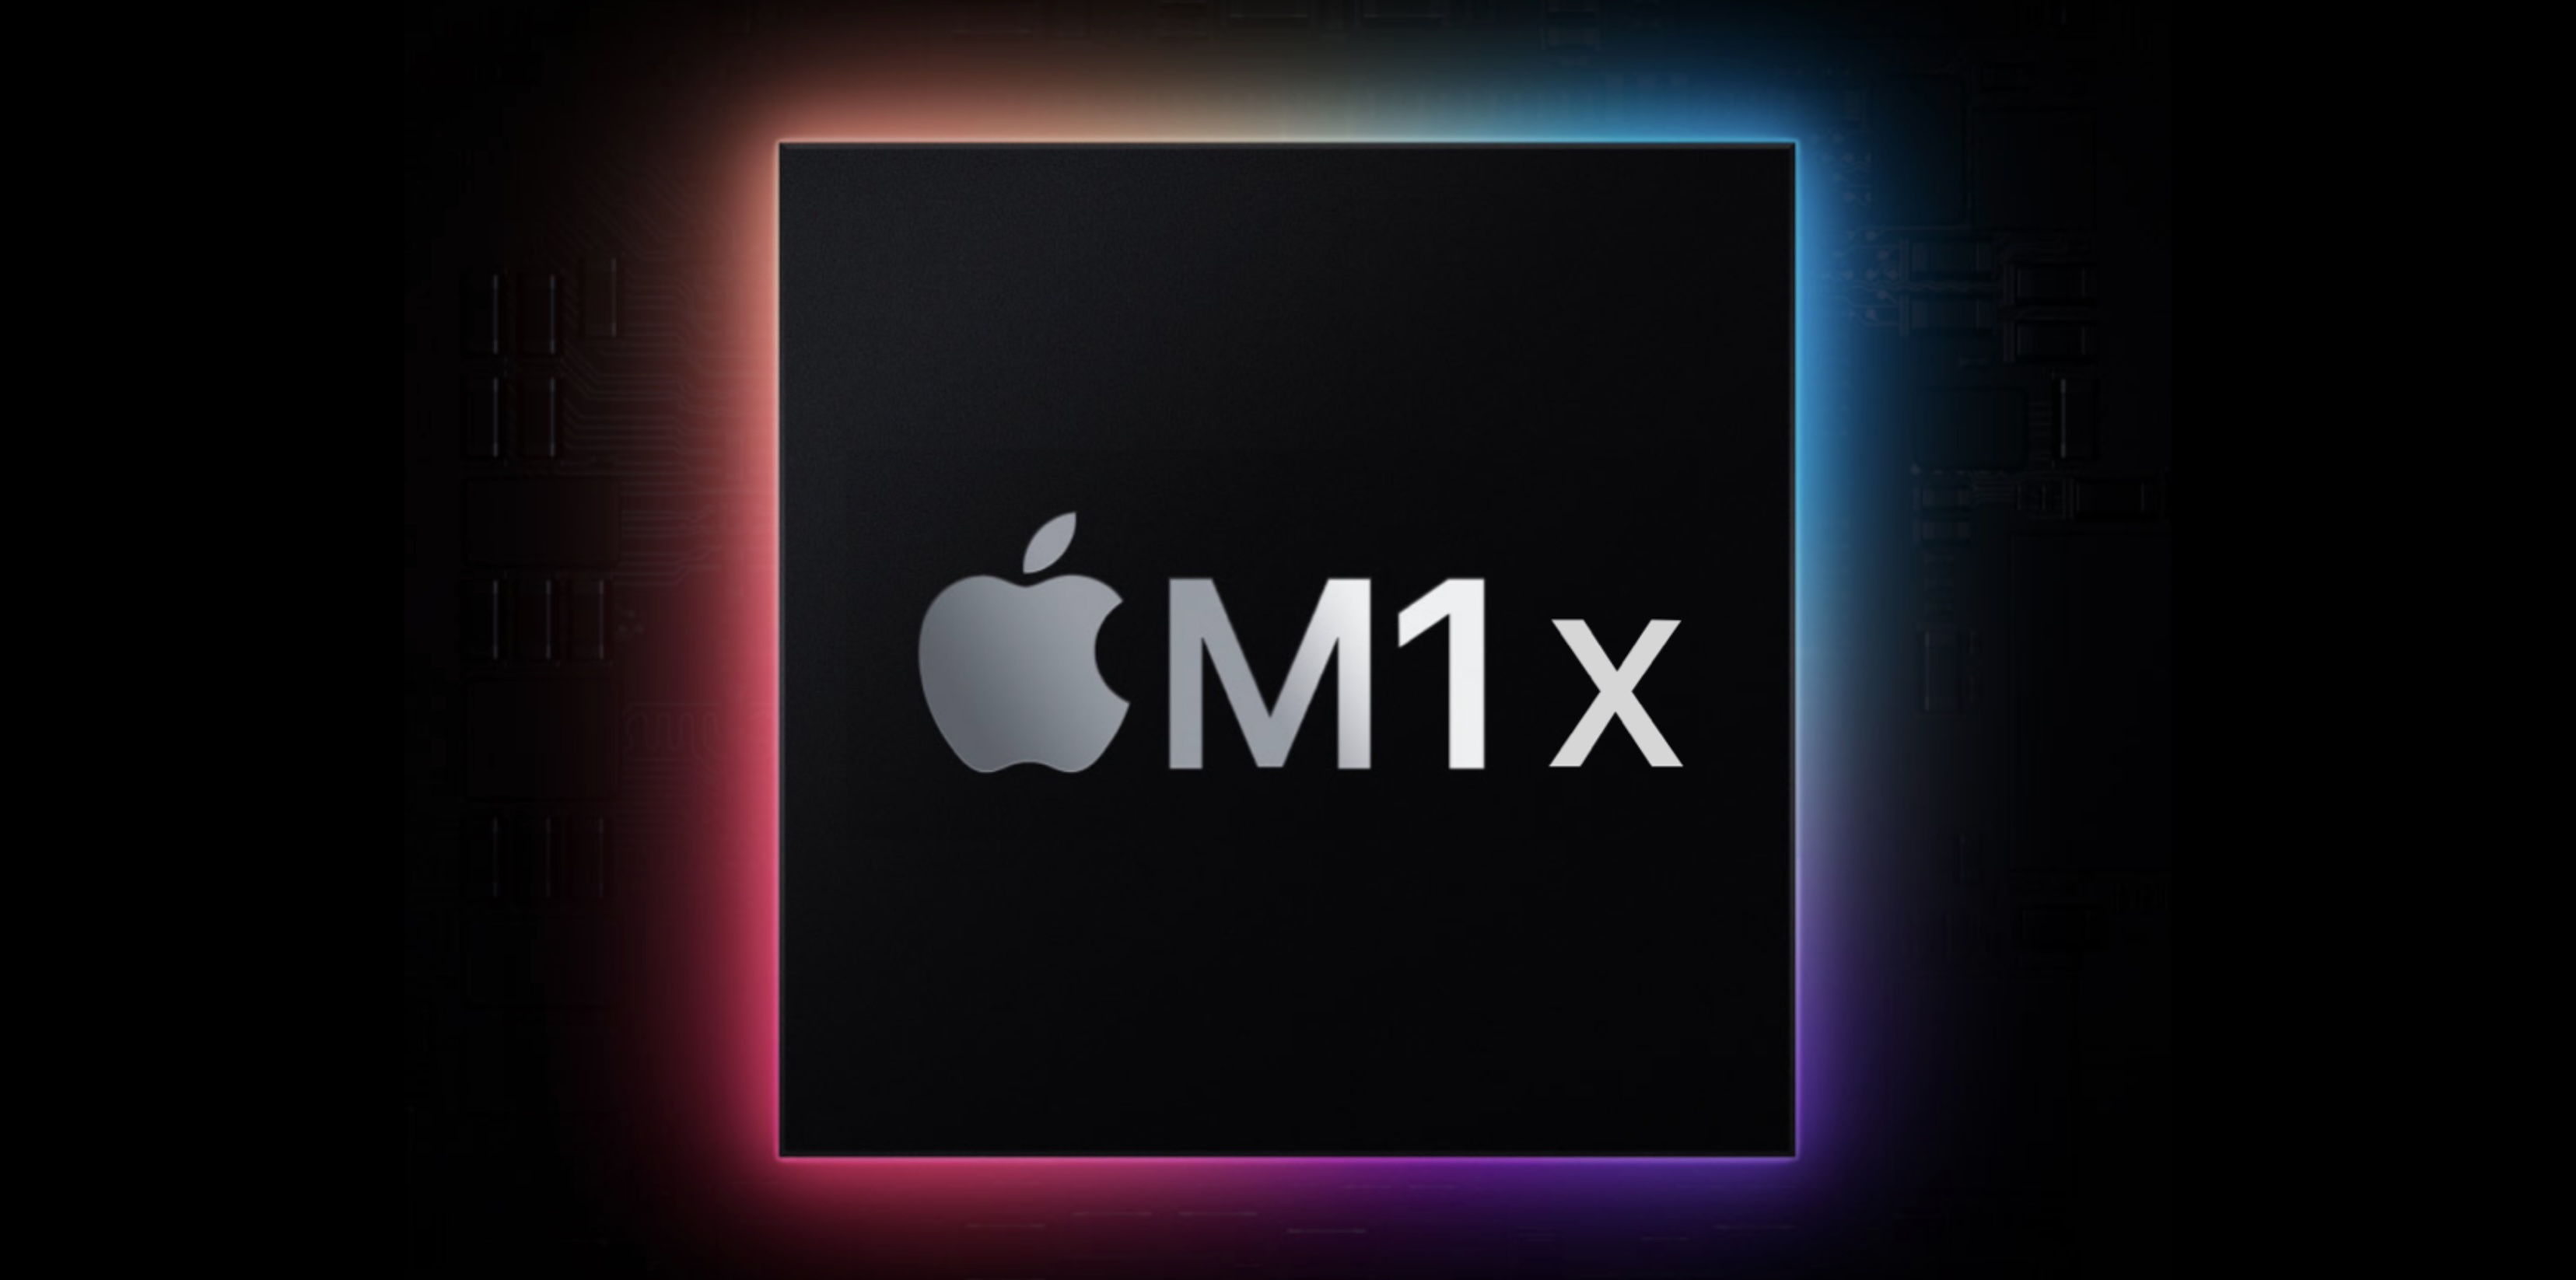 M1X MacBook Pro 14吋與16吋將使用相同晶片、入門價格將會上漲